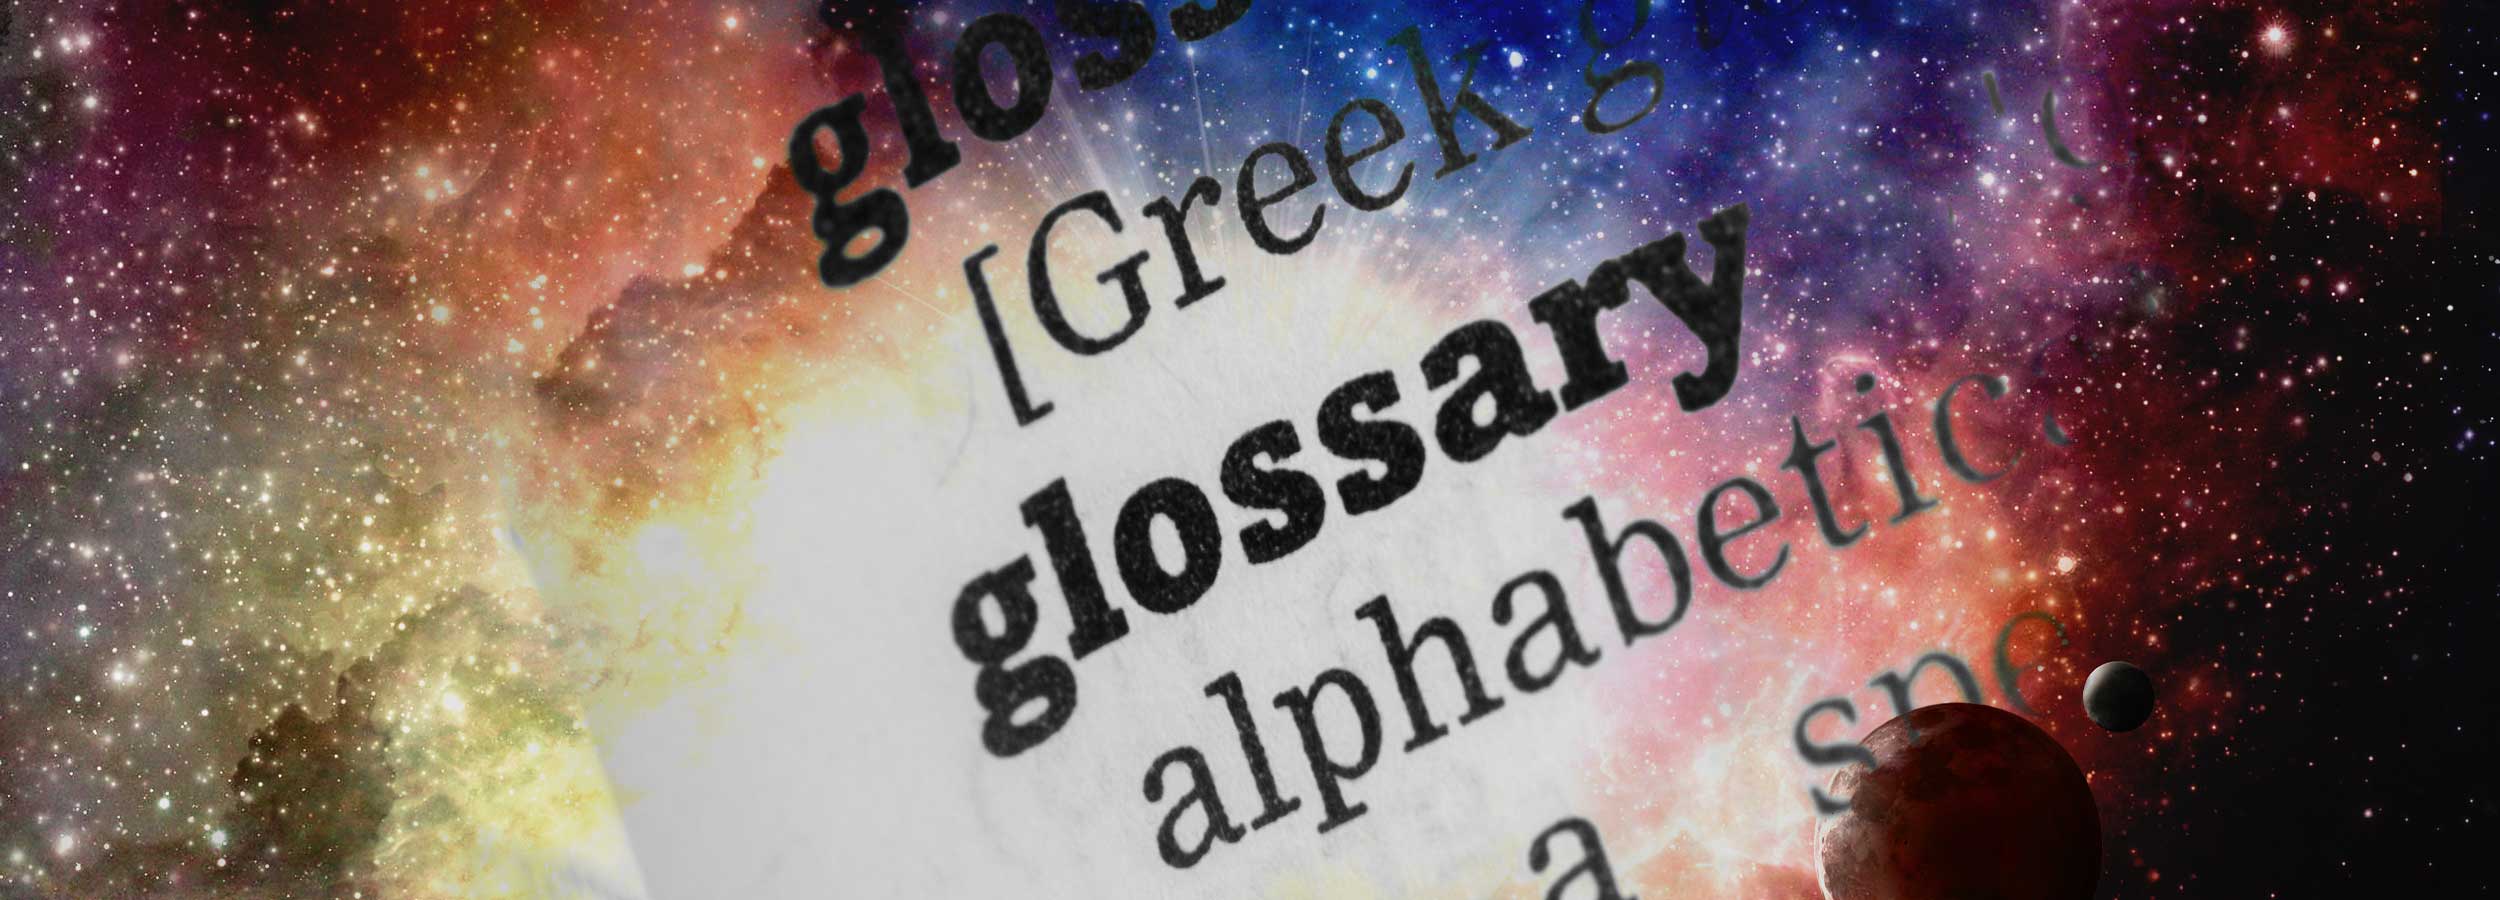 “Glossary